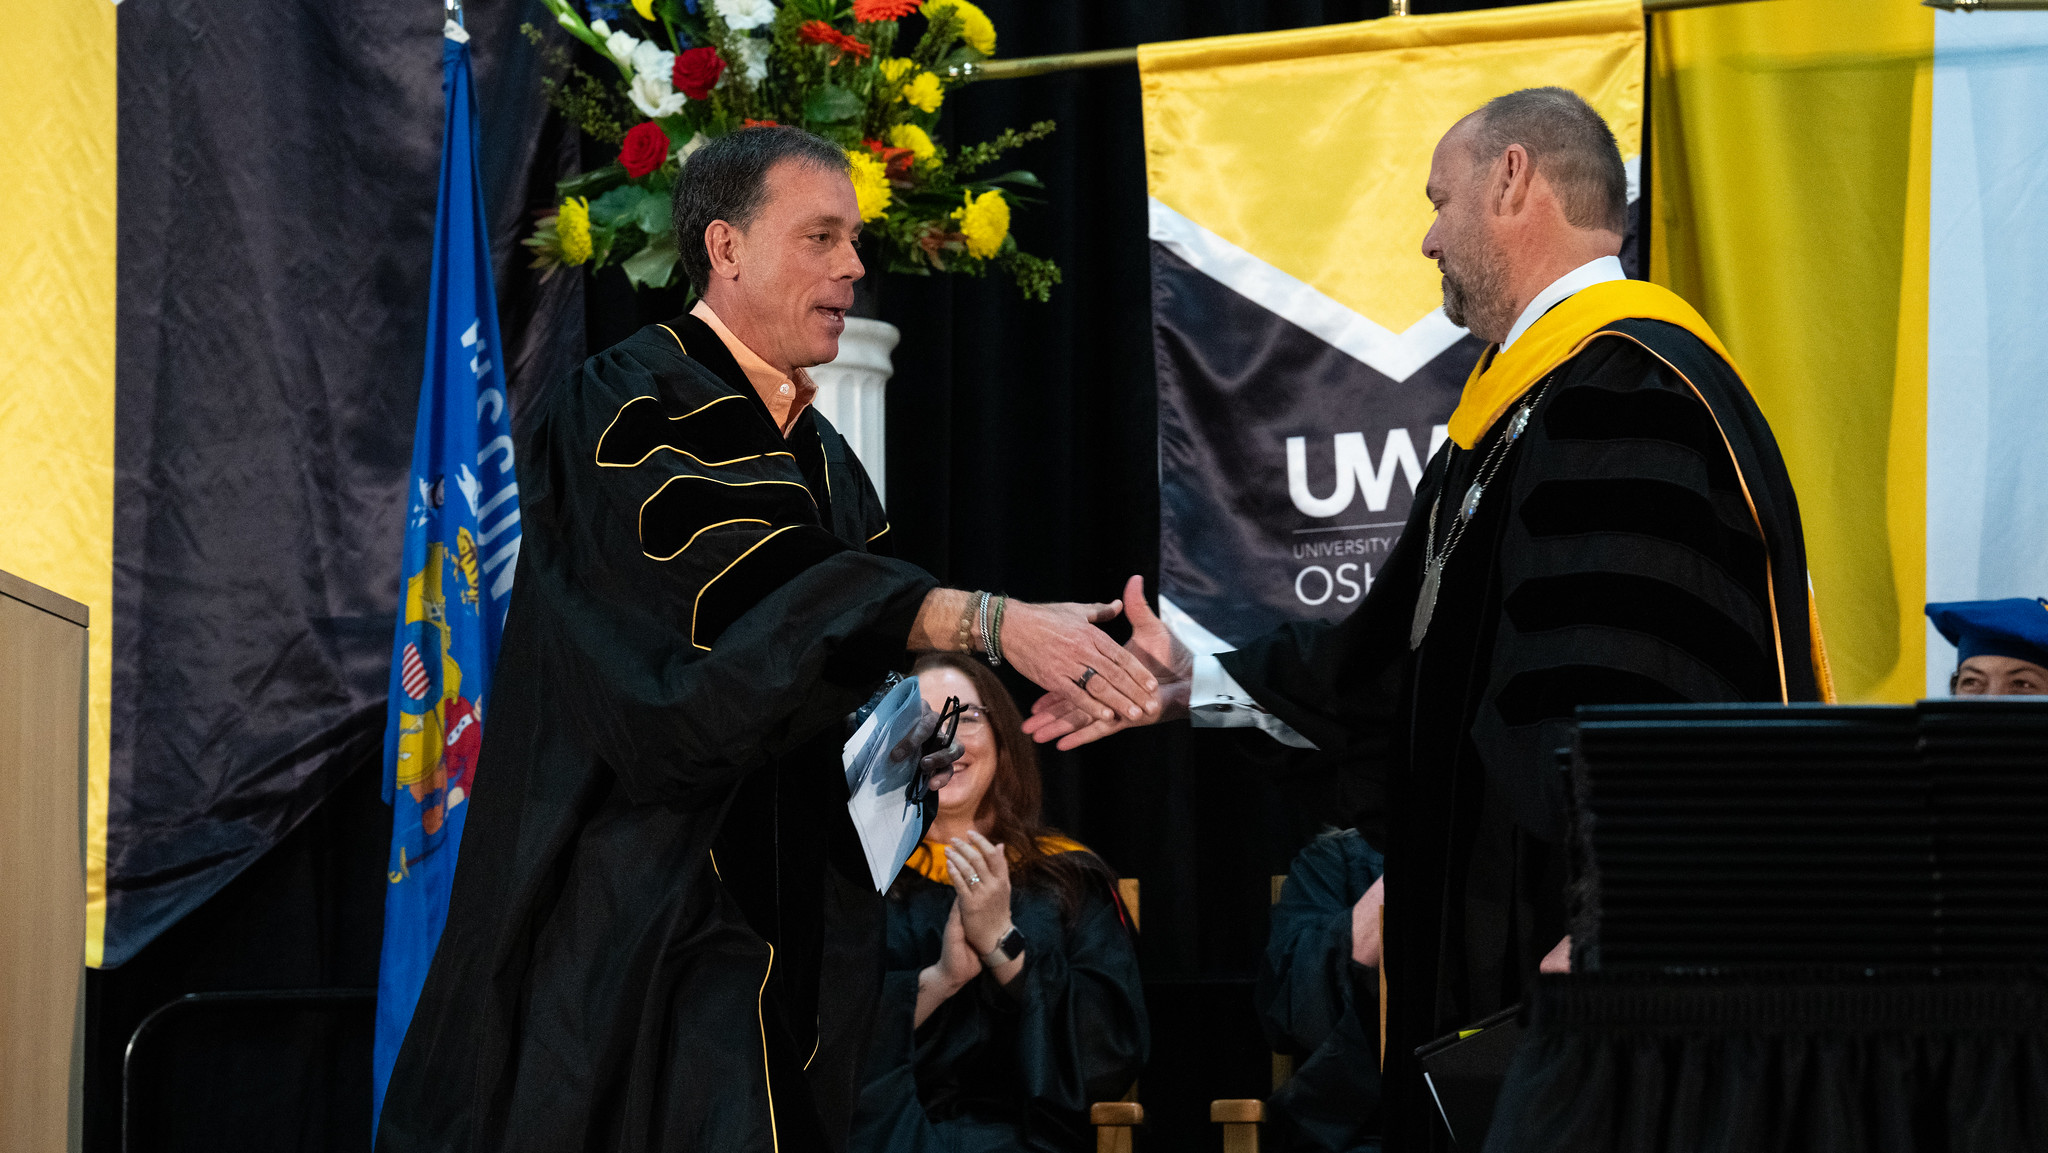 Jim VandeHei shakes someone's hand during UW-Oshkosh's graduation ceremony